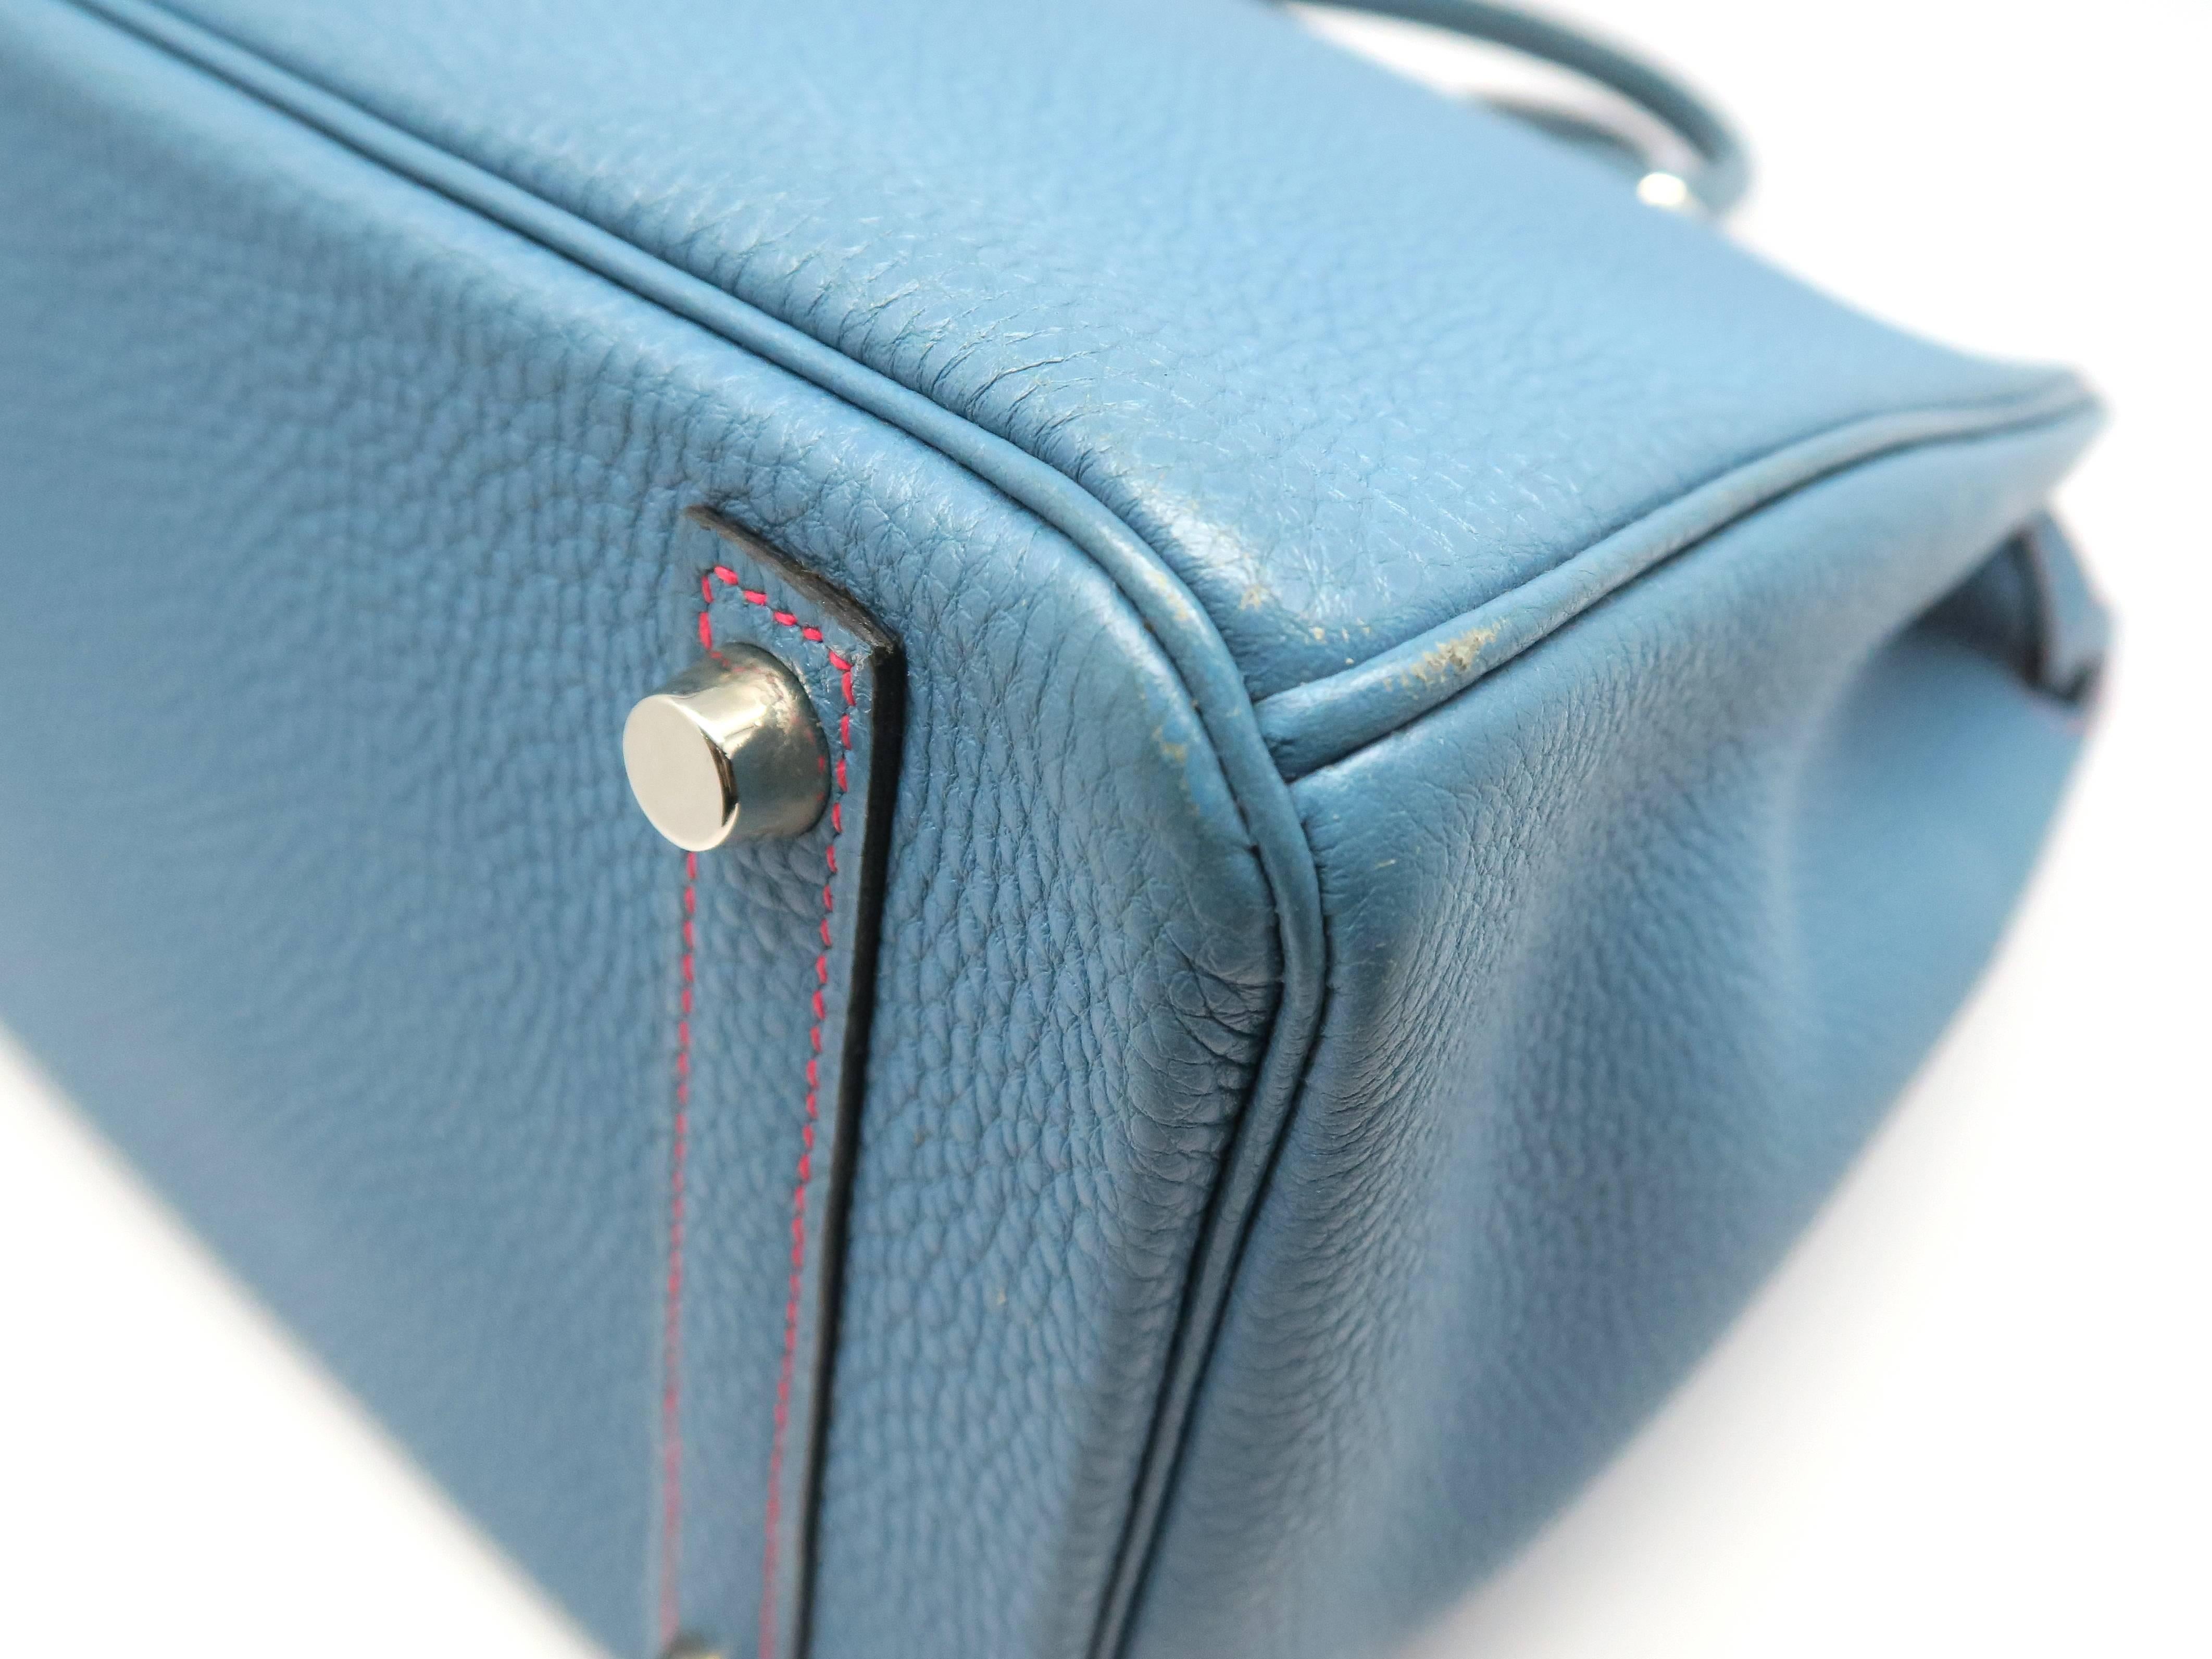 Hermes Birkin 30 Bleu Jean Blue Togo Leather SHW Top Handle Bag 3